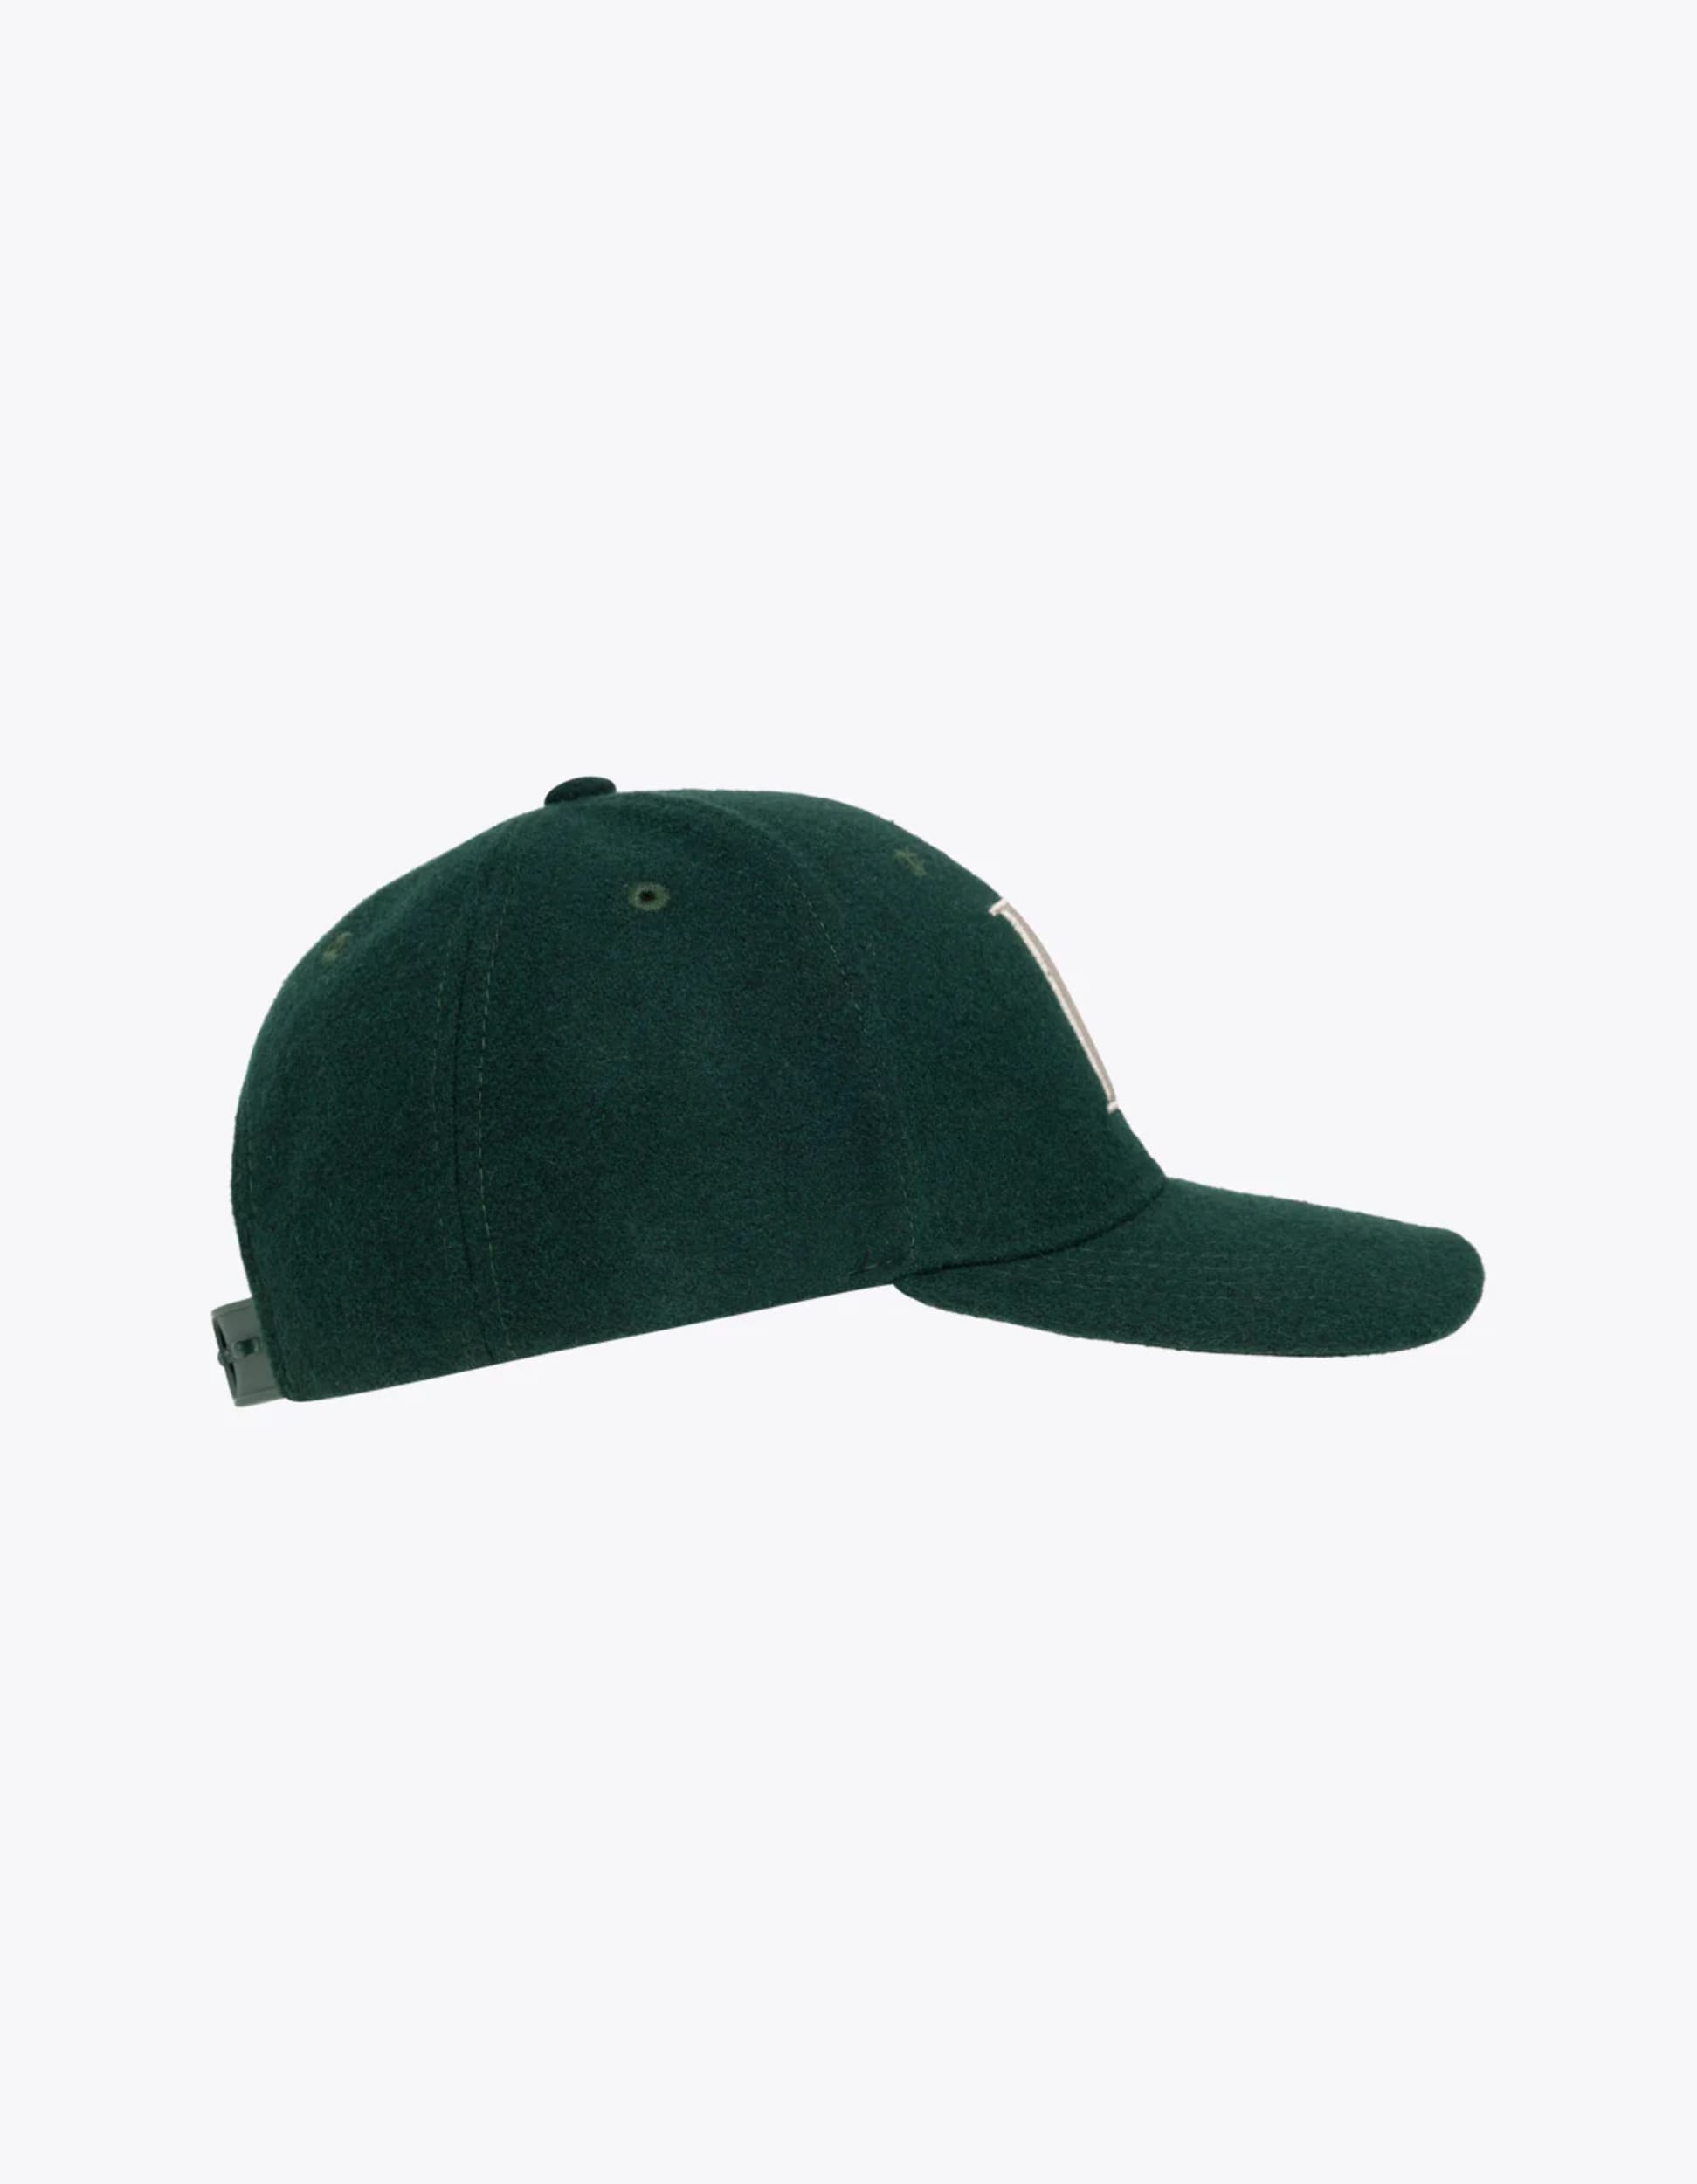 casquette Encore en laine de la marque Les Deux pour Homme en couleur pine green et ivory de côté